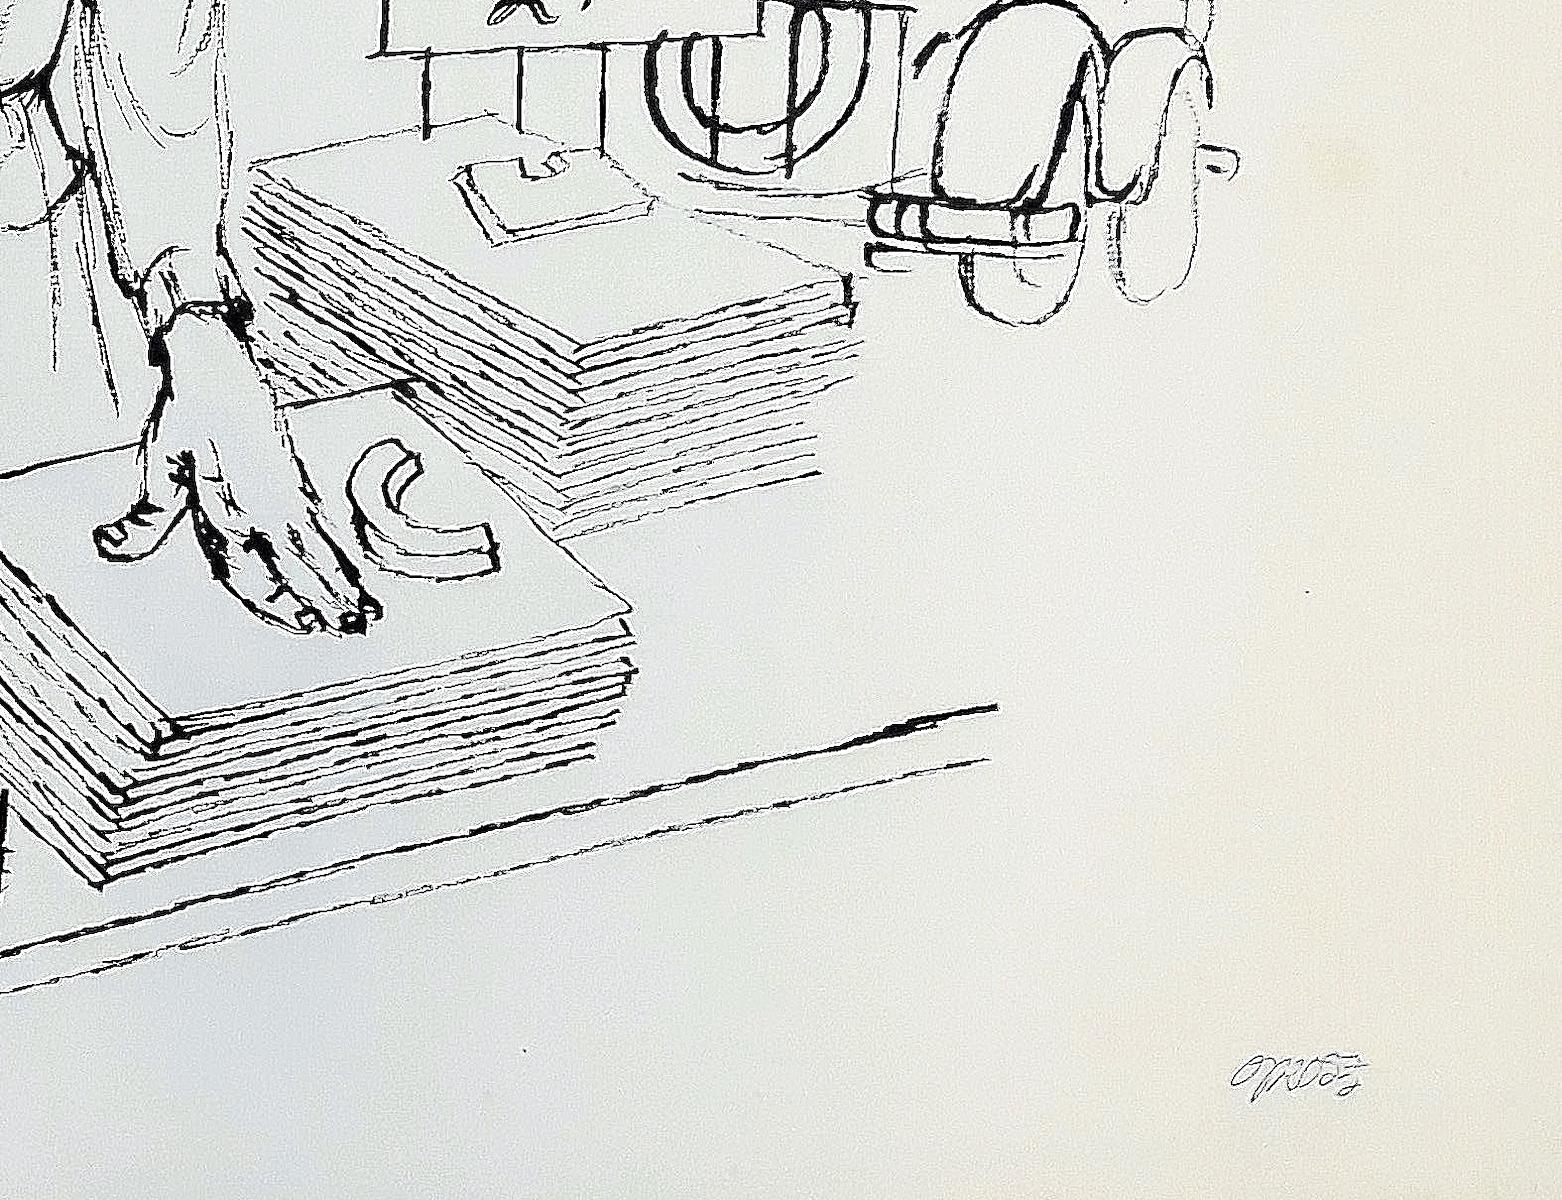 Vendor News, New York  - Dessin à l'encre de Chine sur papier par G. Grosz - 1932 - Art de George Grosz